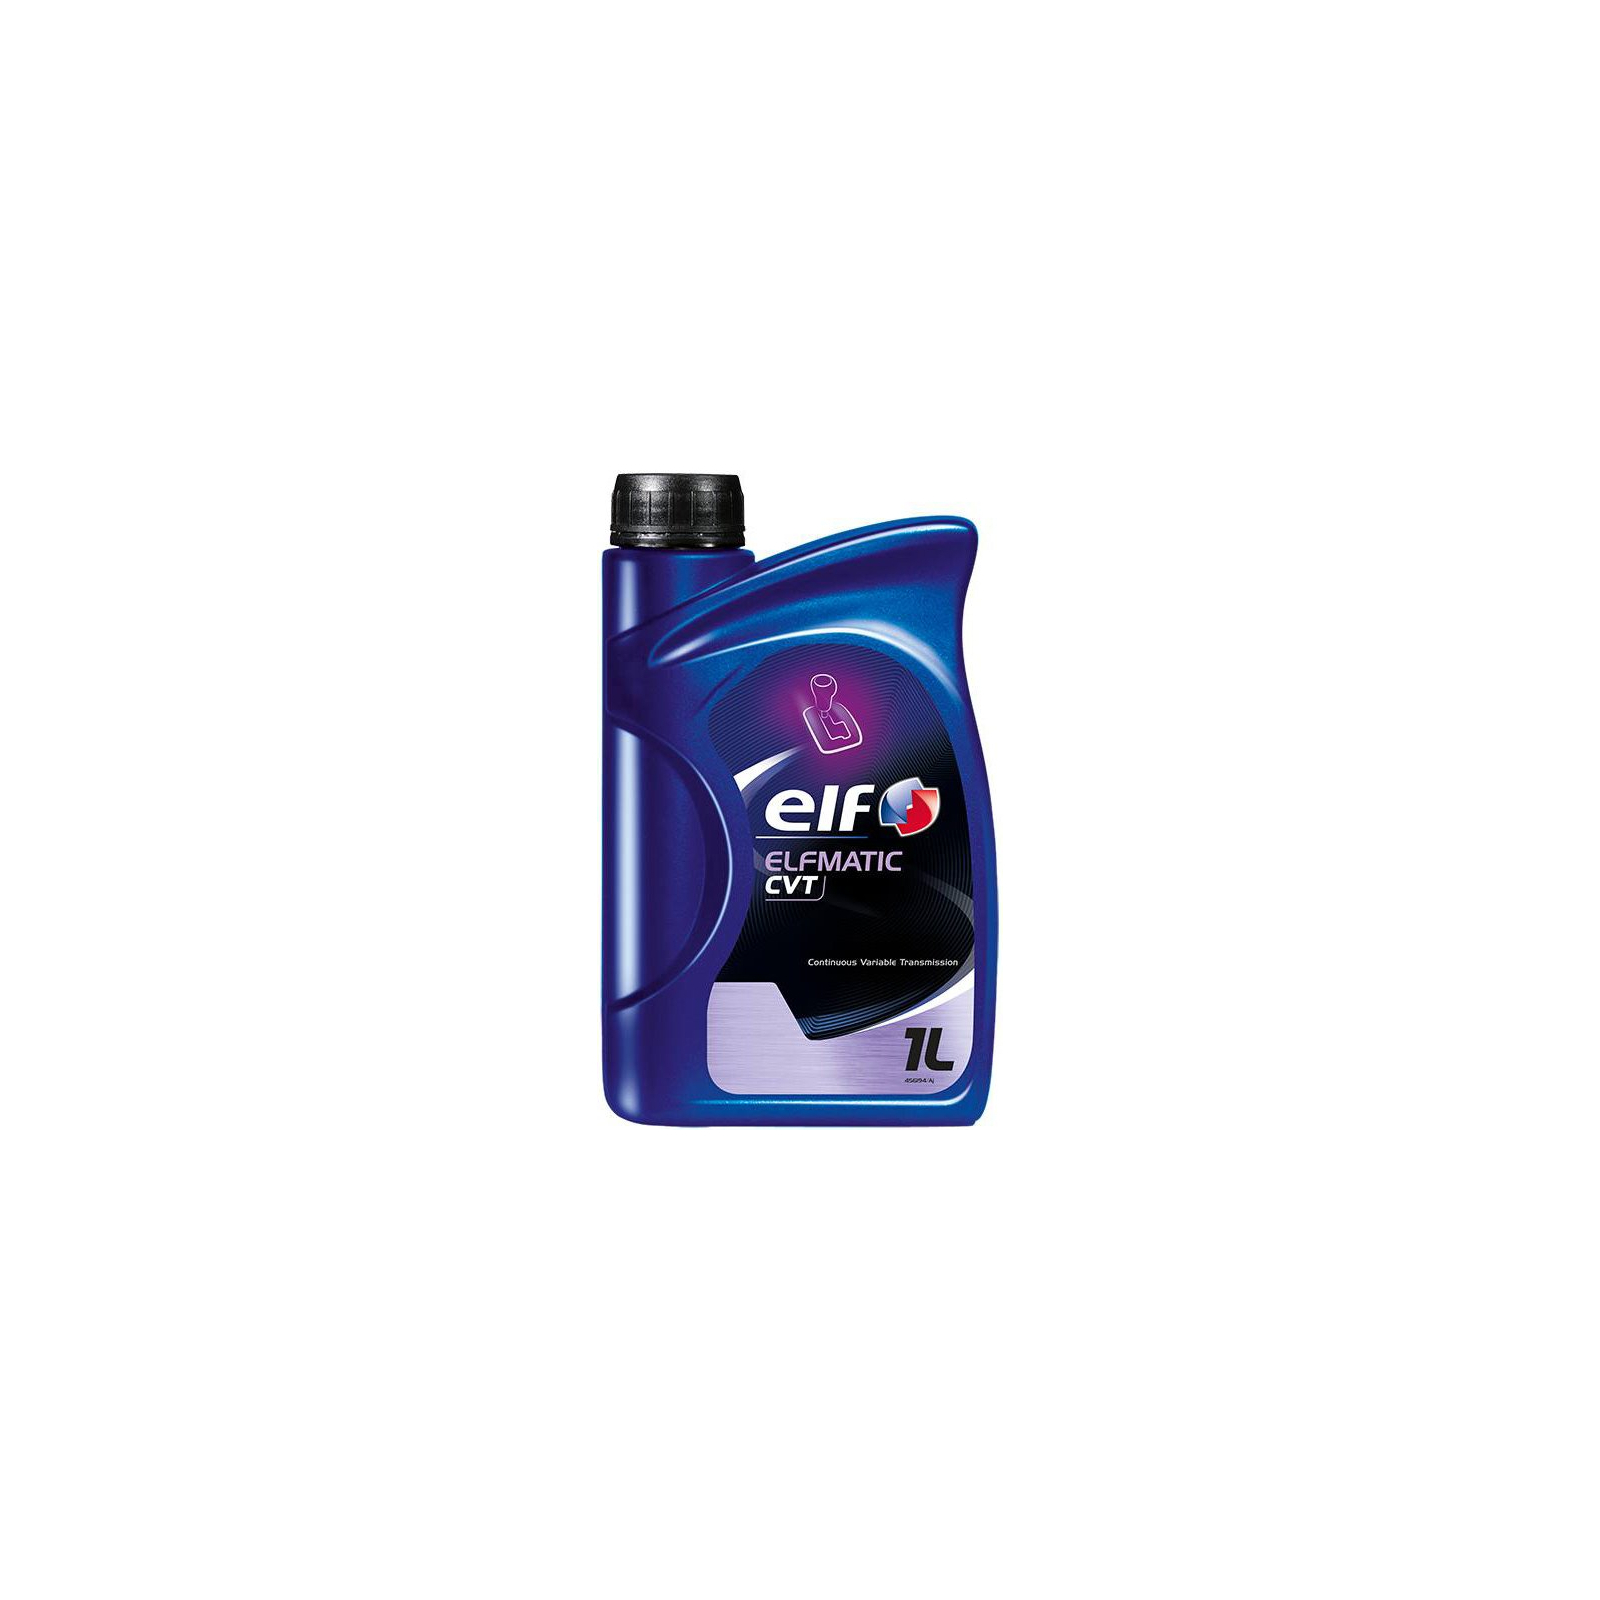 Трансмиссионное масло ELF Elfmatic CVT, 1л (4916)